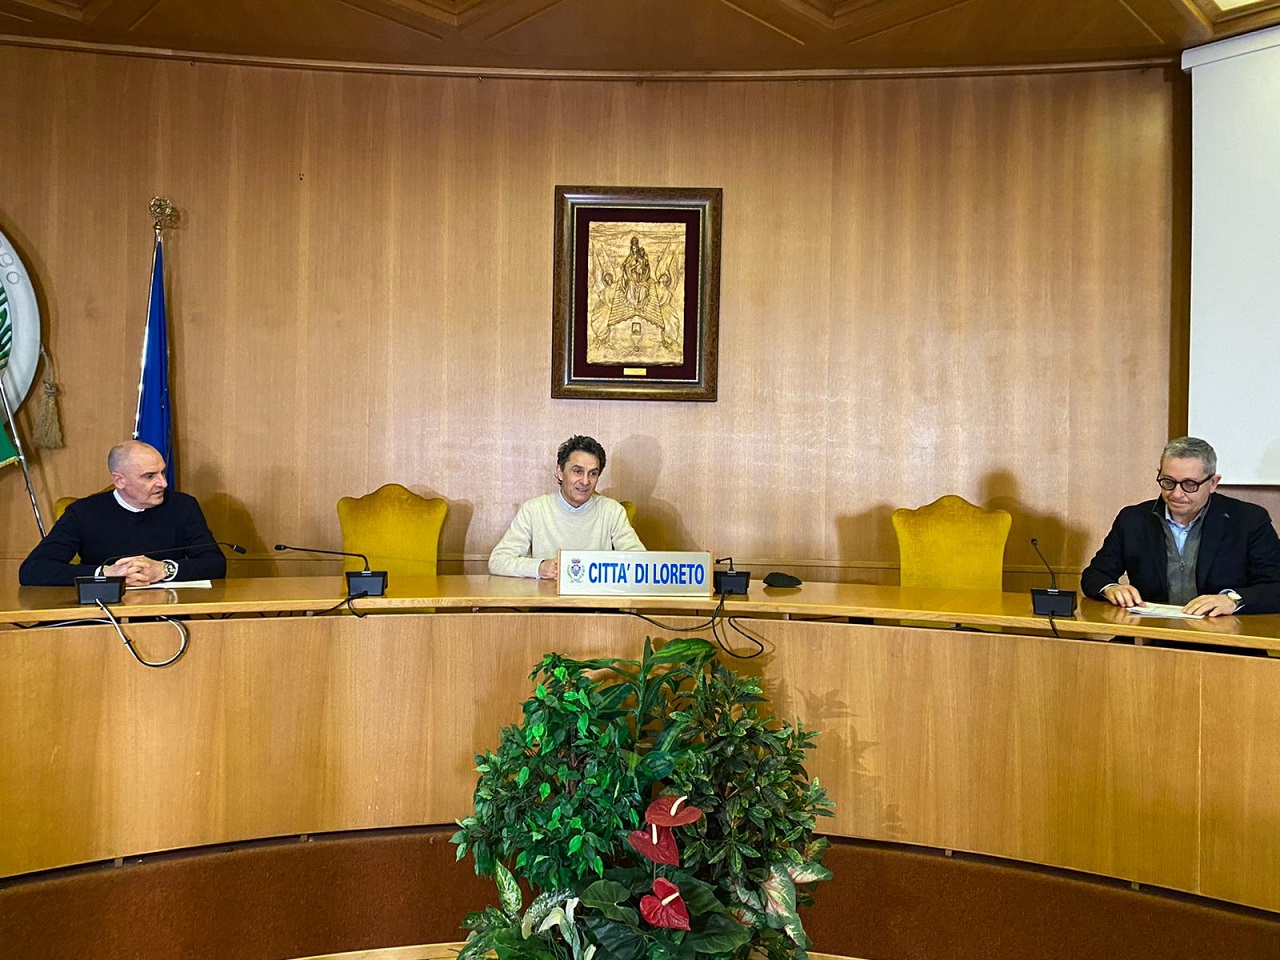 La conferenza a Loreto: a sinistra l'assessore Nazzareno Pighetti, al centro il sindaco Moreno Pieroni e a destra l'assessore Giovanni Tanfani